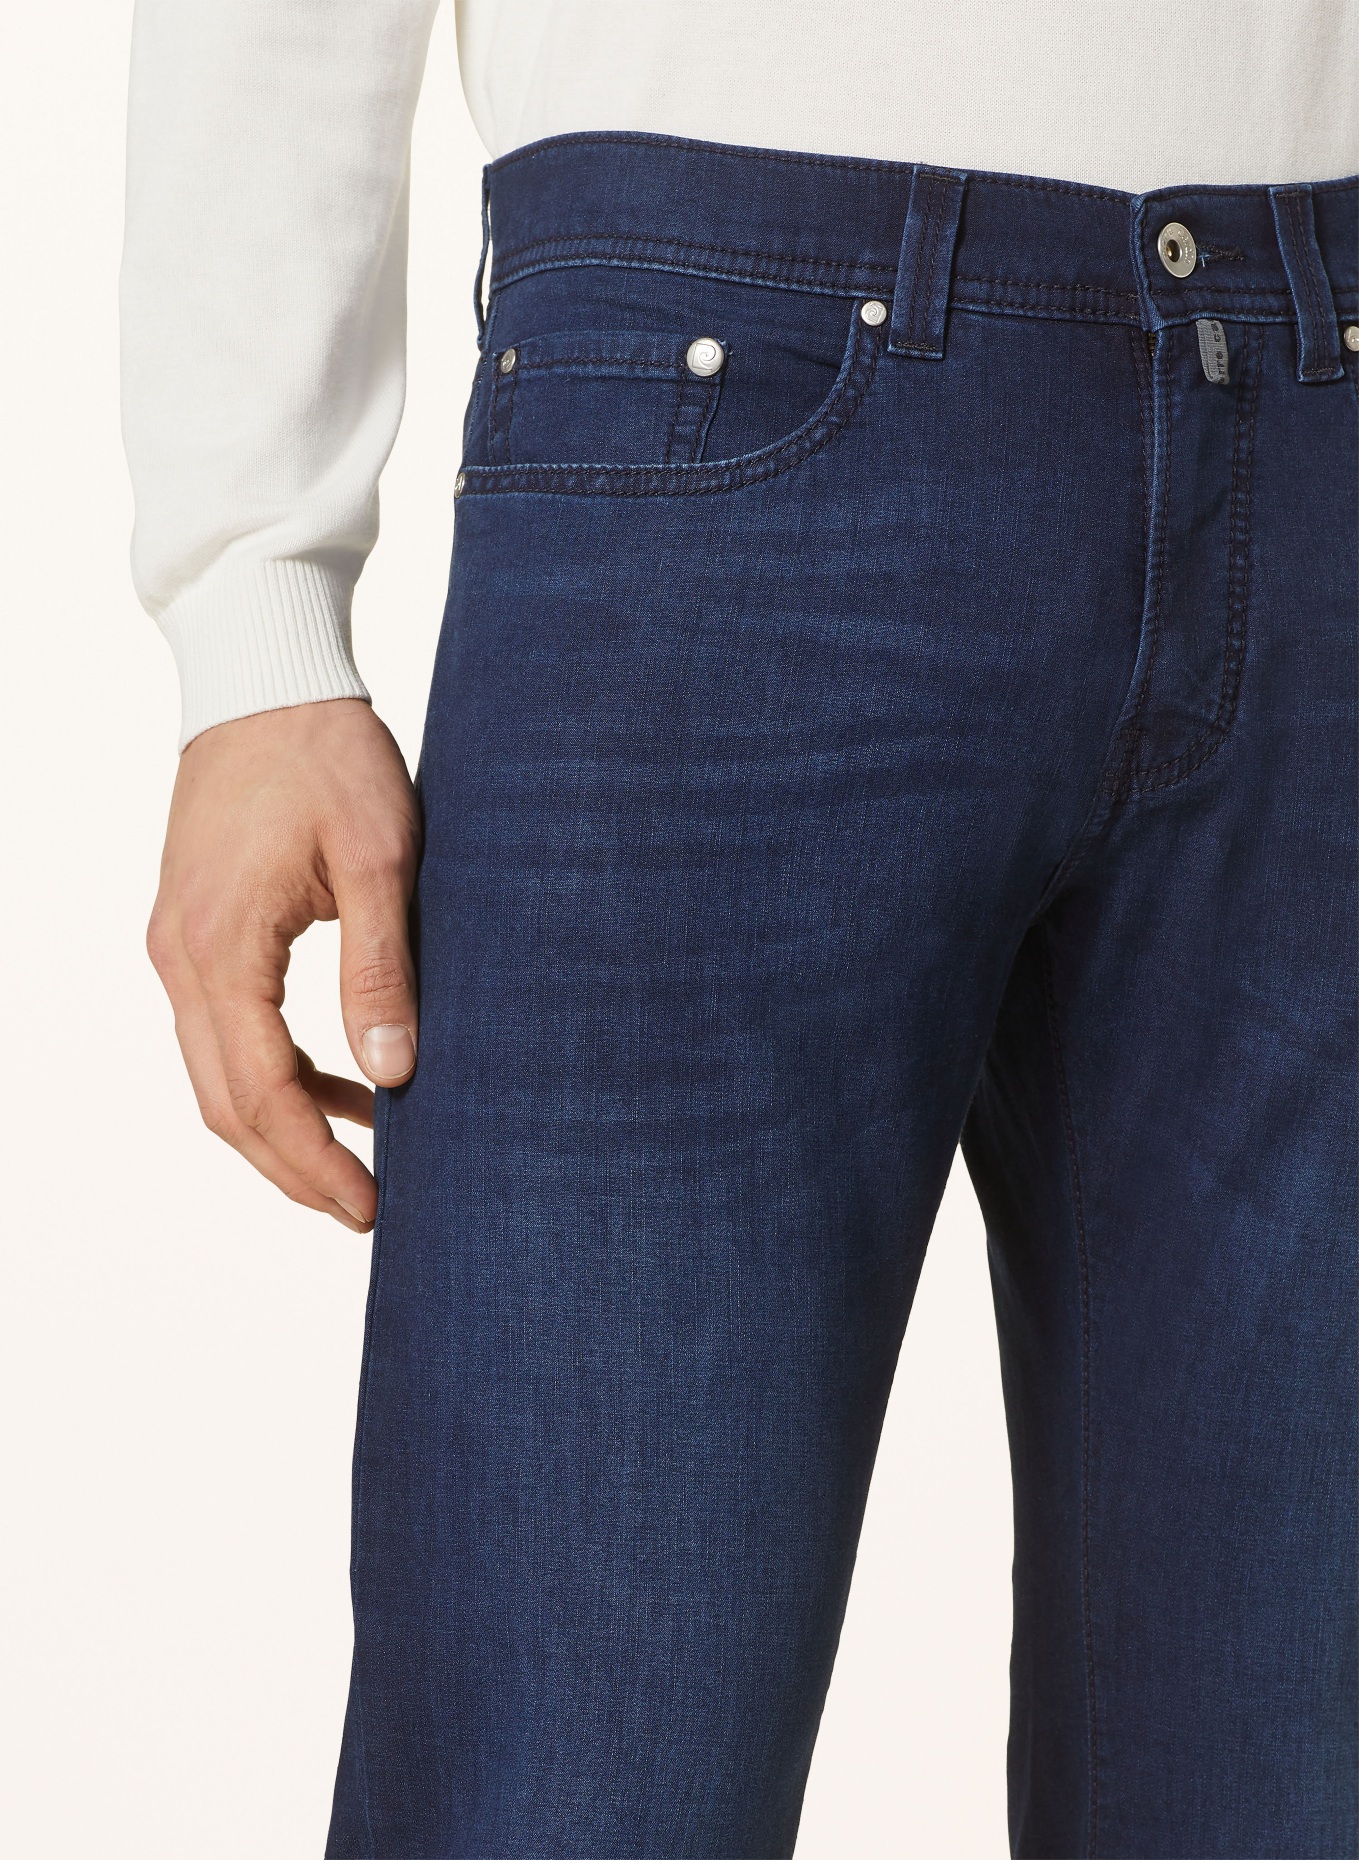 pierre cardin Jeans LYON Slim Fit, Farbe: 6814 dark blue used buffies (Bild 5)